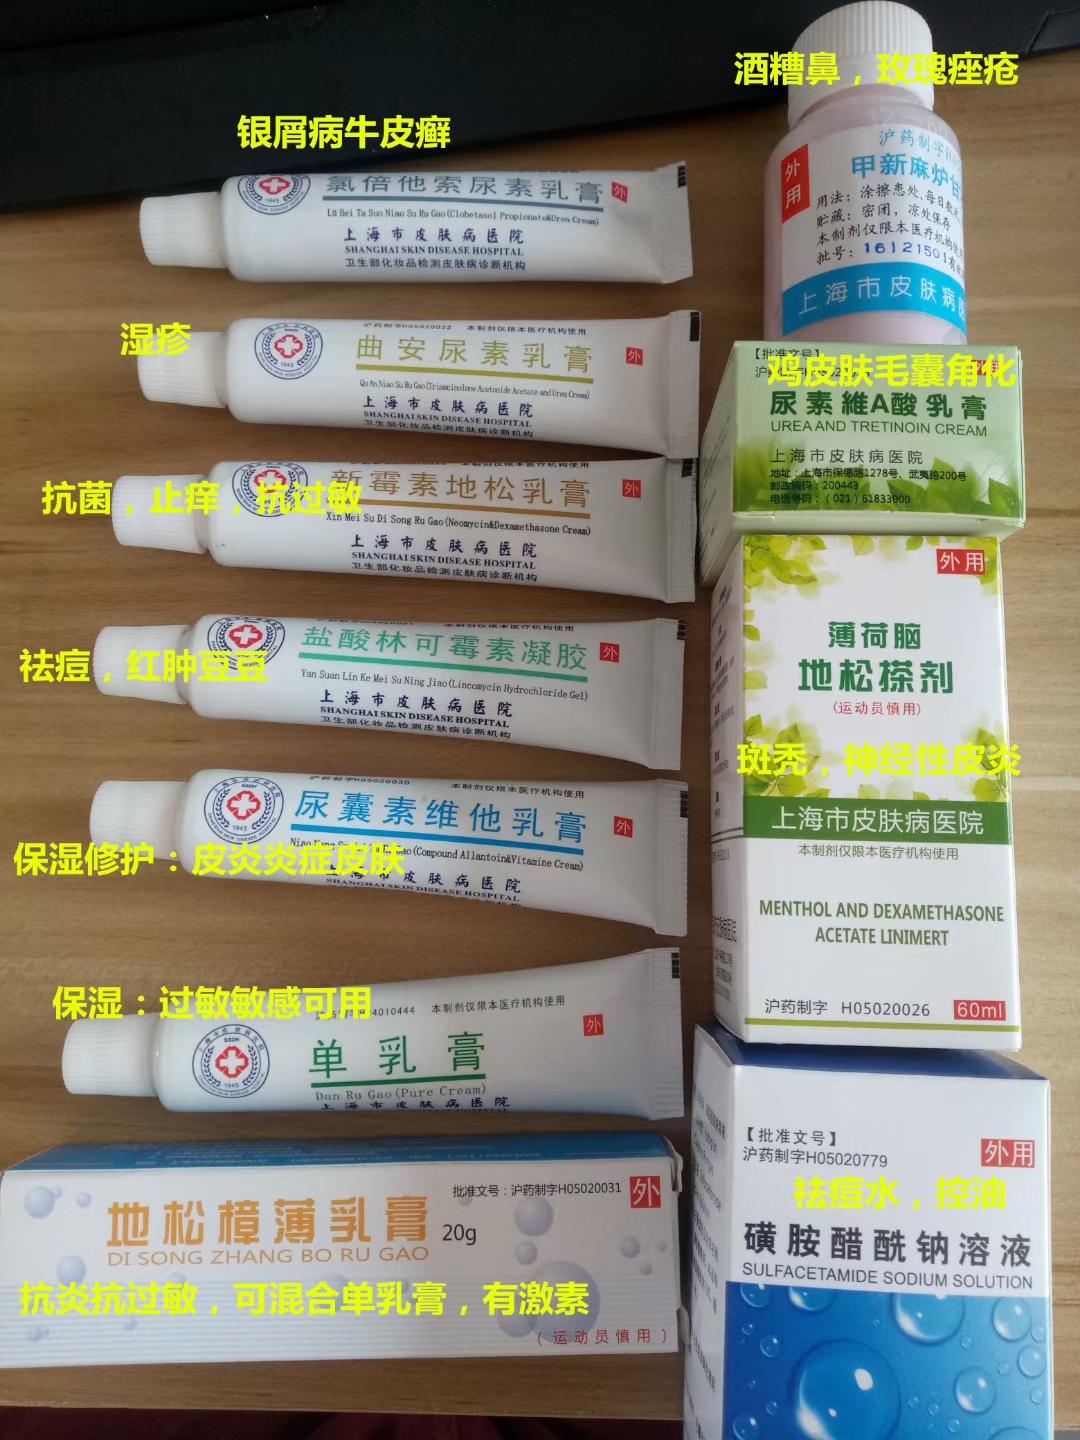 上海市皮肤病医院尿囊素维他乳膏怎么买